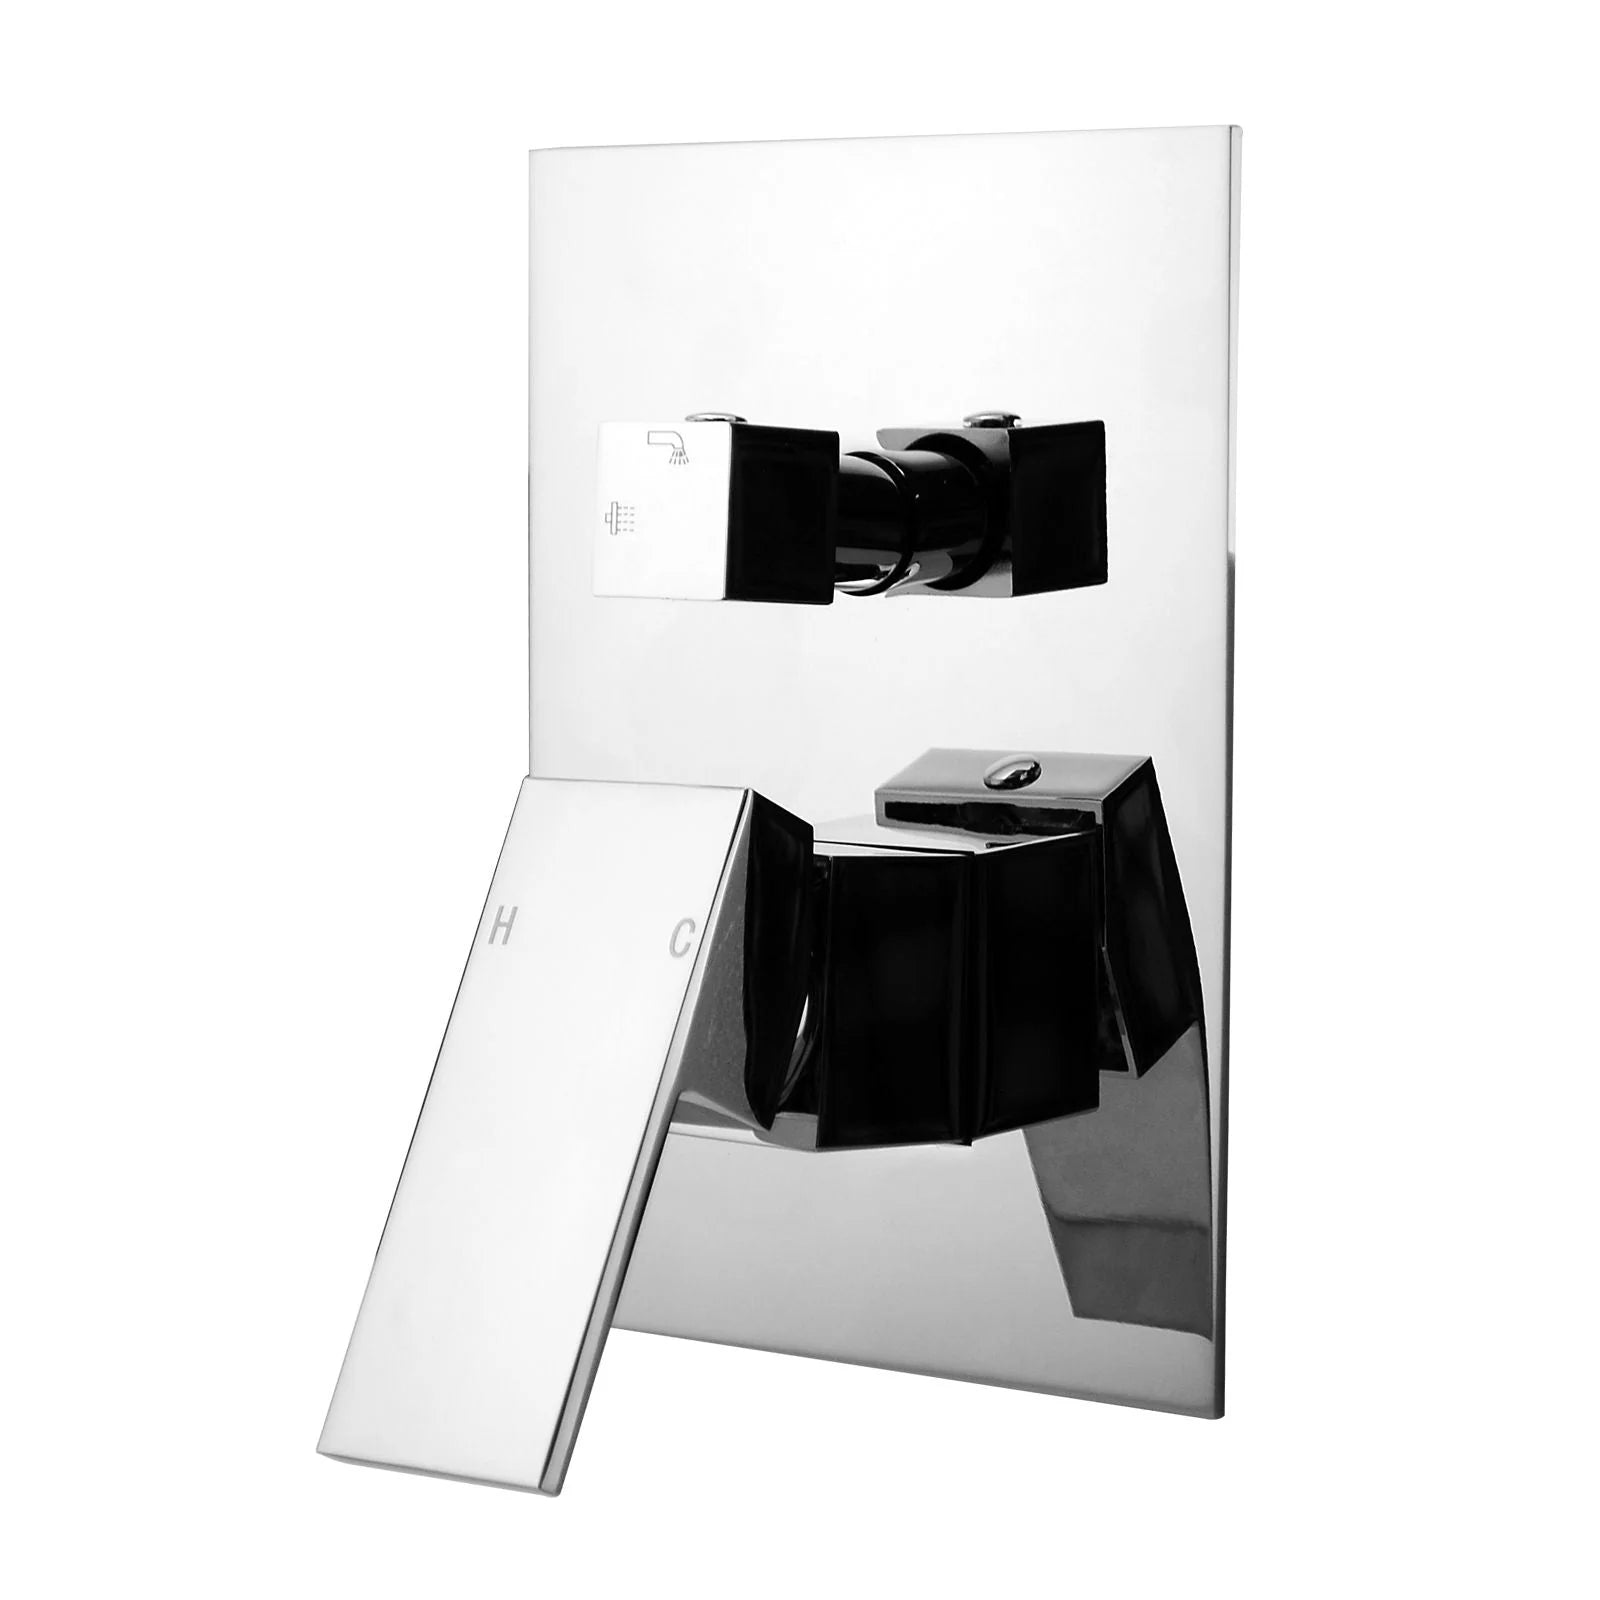 Blaze Shower/Bath Mixer Diverter : Sleek, Modern, Functional Bathroom Accessory-Chrome-CH0115-2-ST